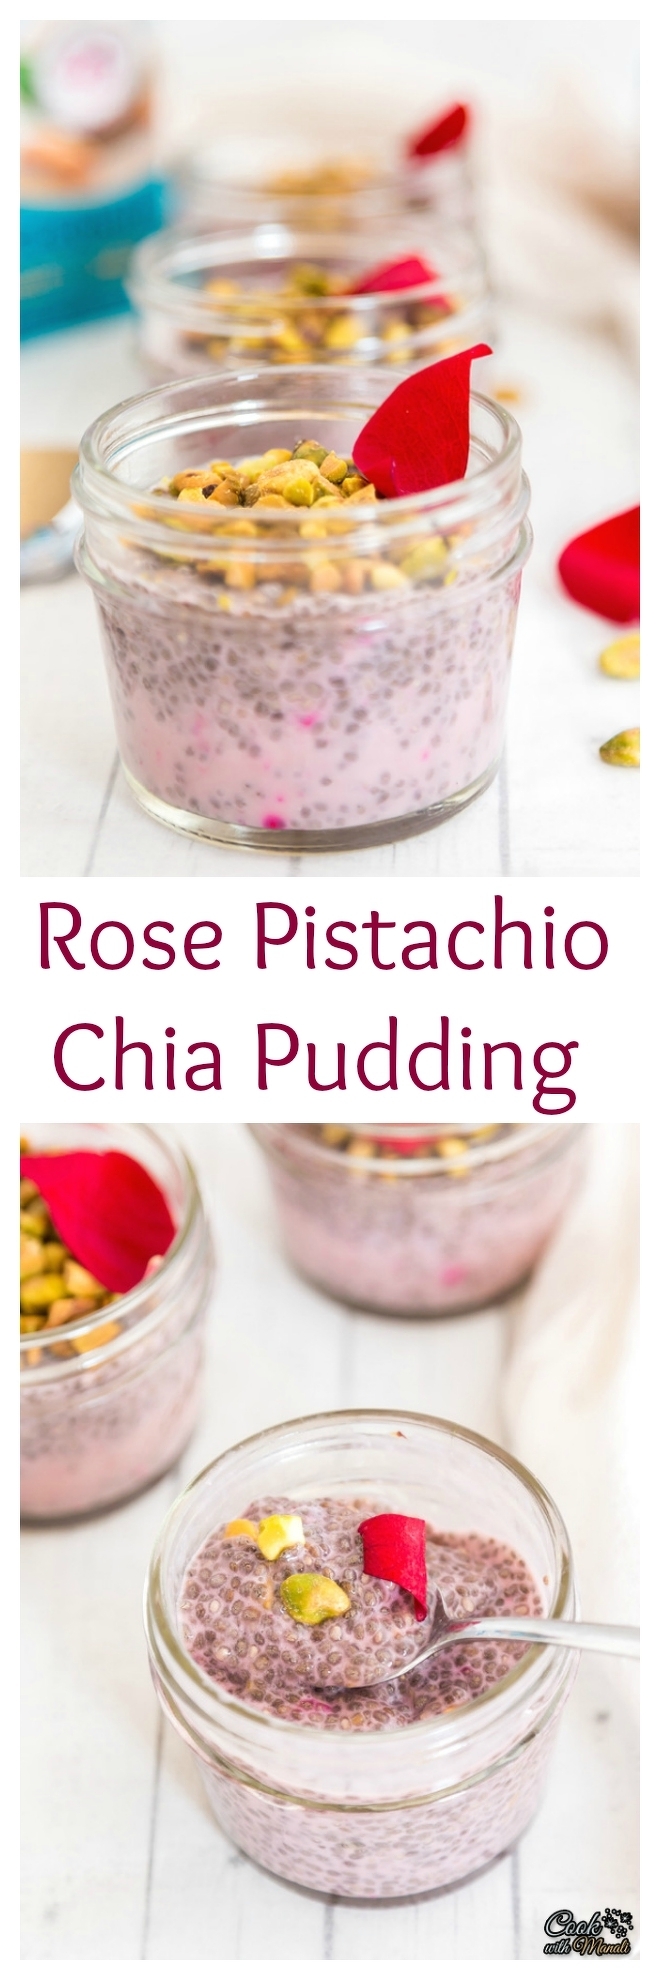 Rose Pistachio Chia Pudding Collage-nocwm